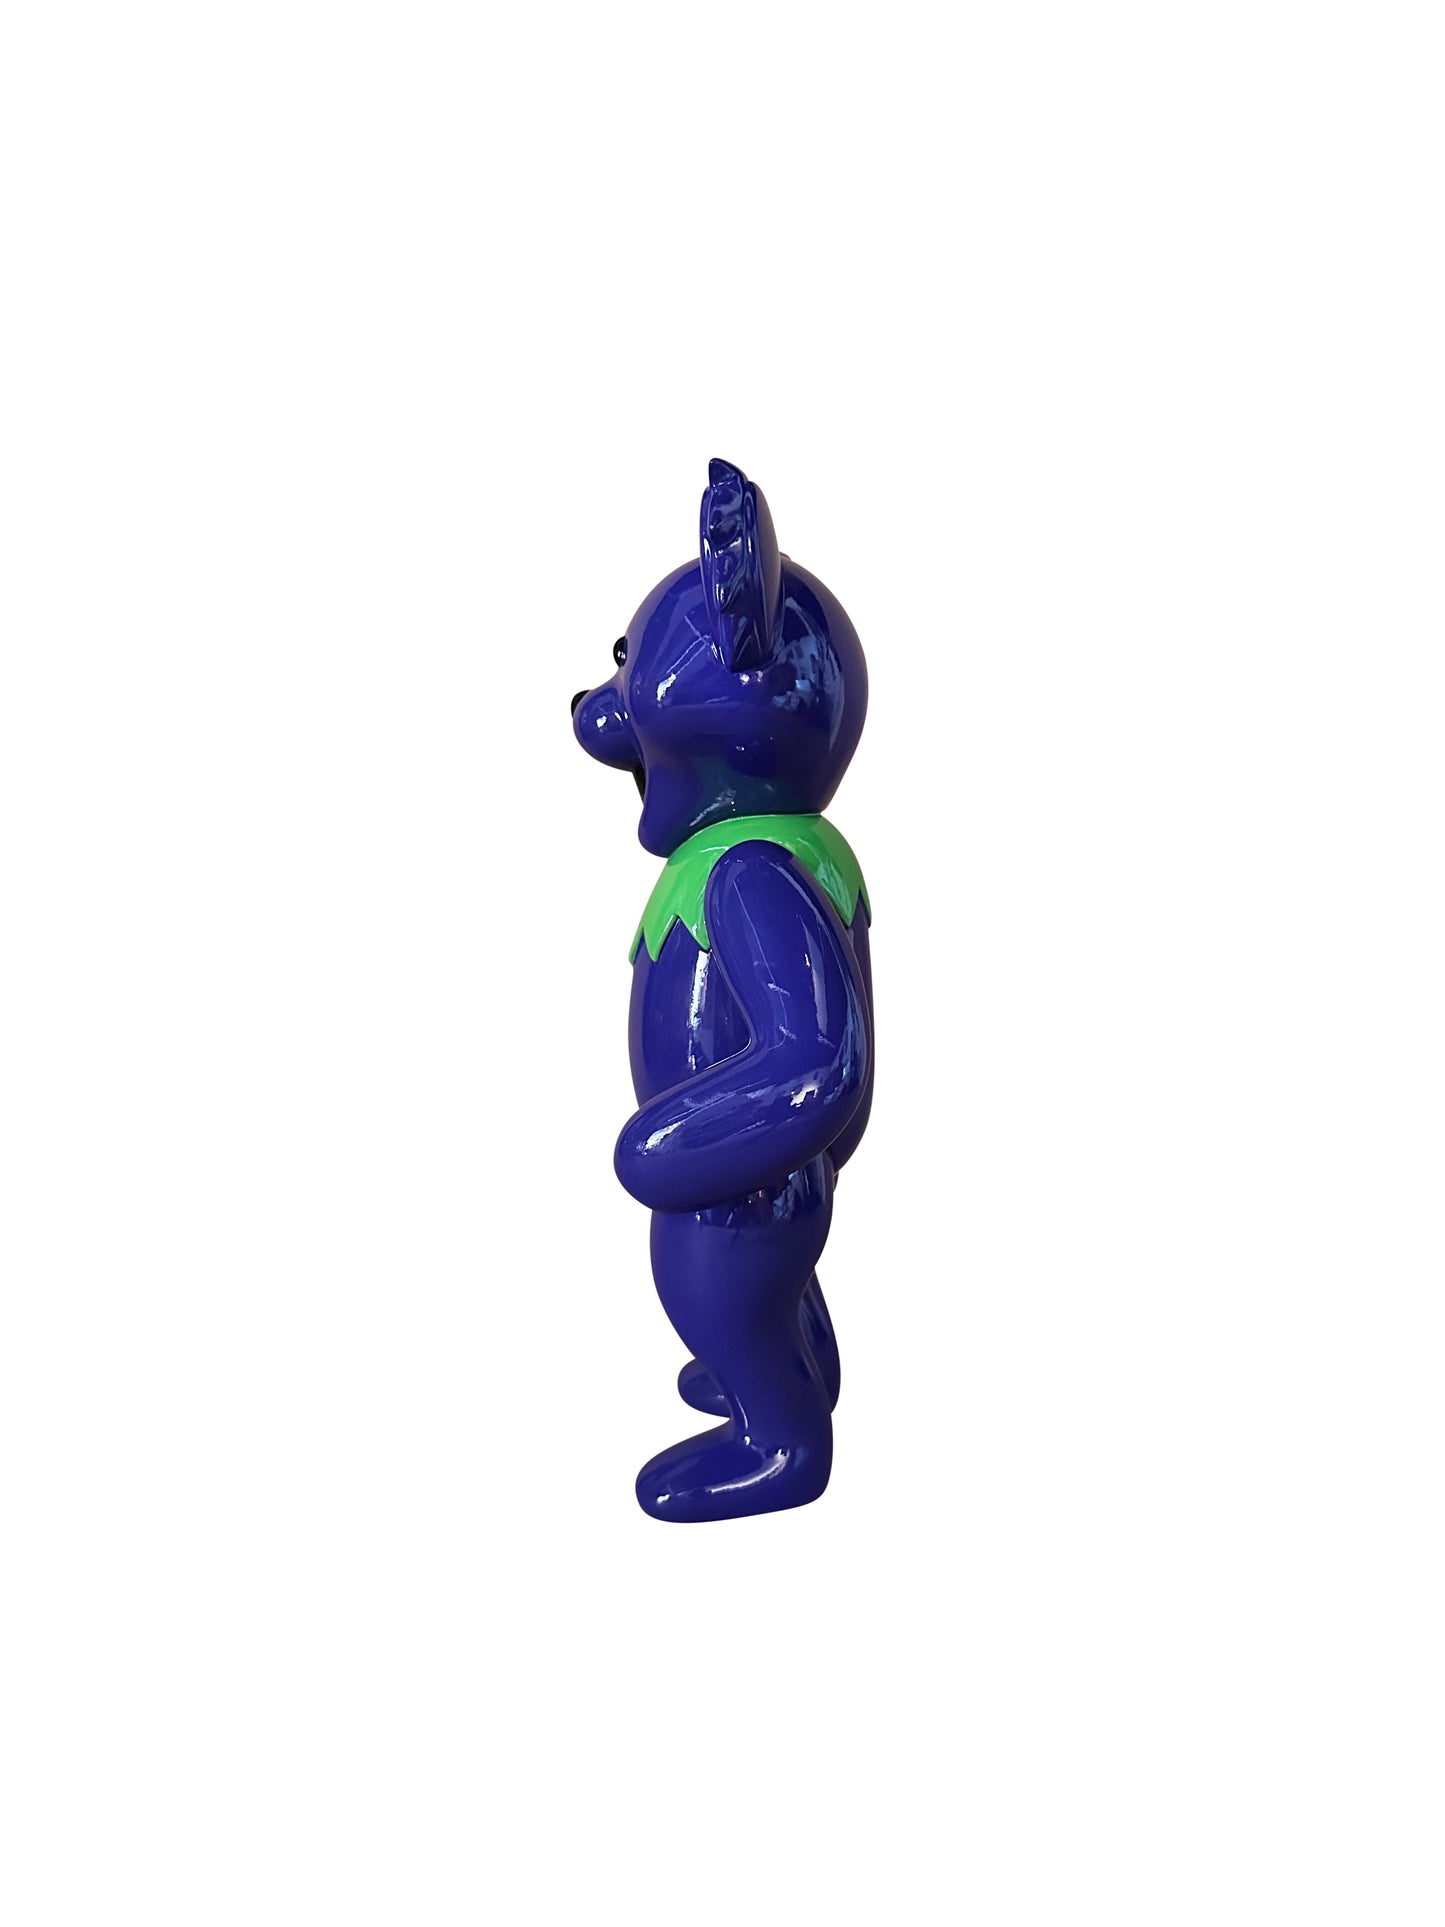 MEGA Grateful Dead Bear (Purple) - Resin Statue